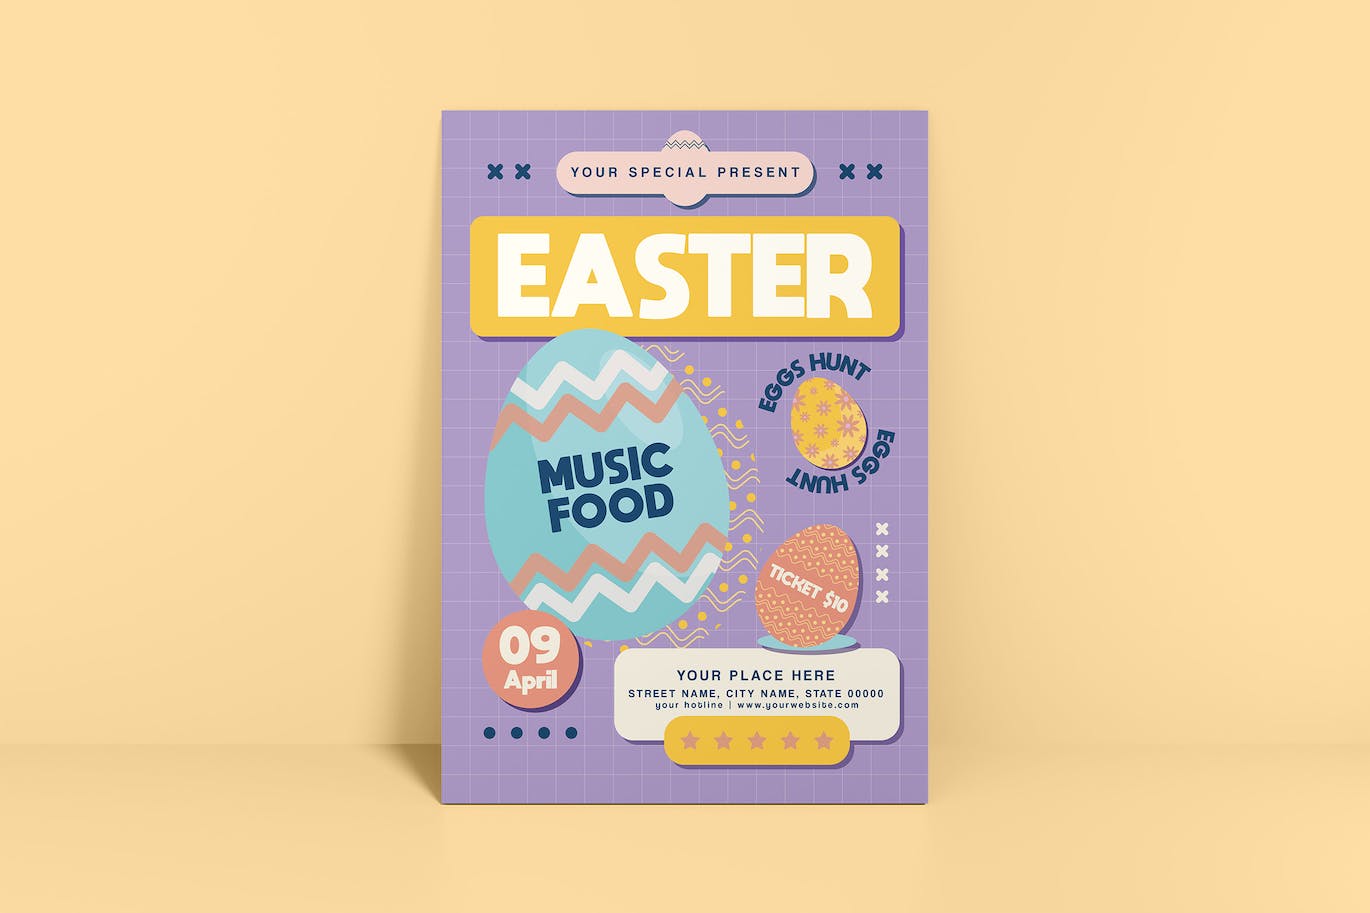 复活节寻蛋传单设计模板 Easter Egg Hunt Flyer 设计素材 第1张